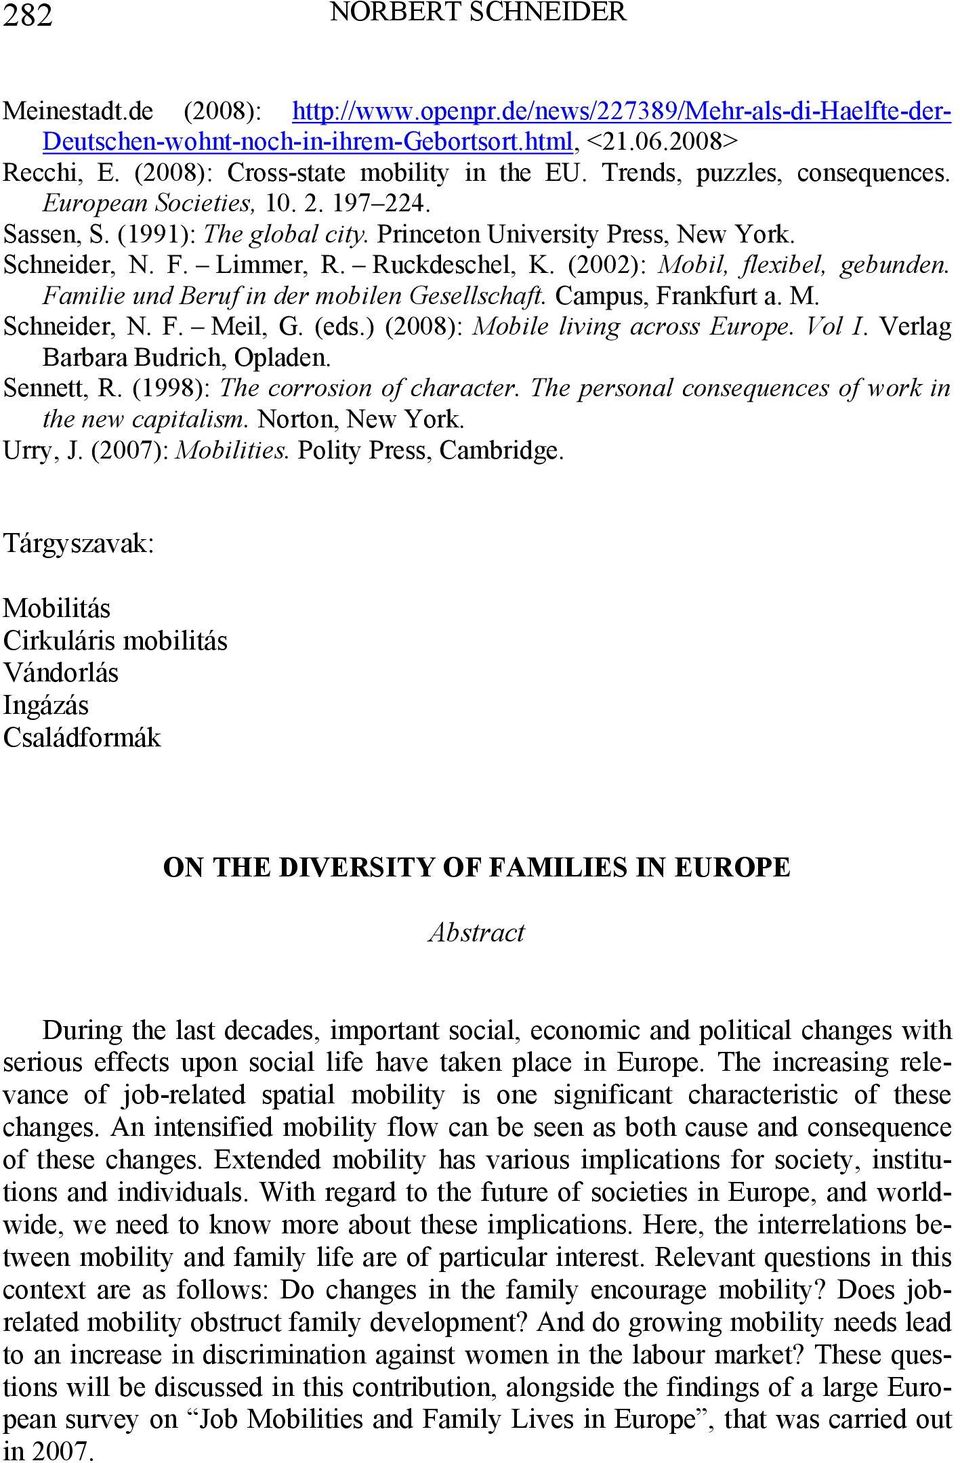 Limmer, R. Ruckdeschel, K. (2002): Mobil, flexibel, gebunden. Familie und Beruf in der mobilen Gesellschaft. Campus, Frankfurt a. M. Schneider, N. F. Meil, G. (eds.